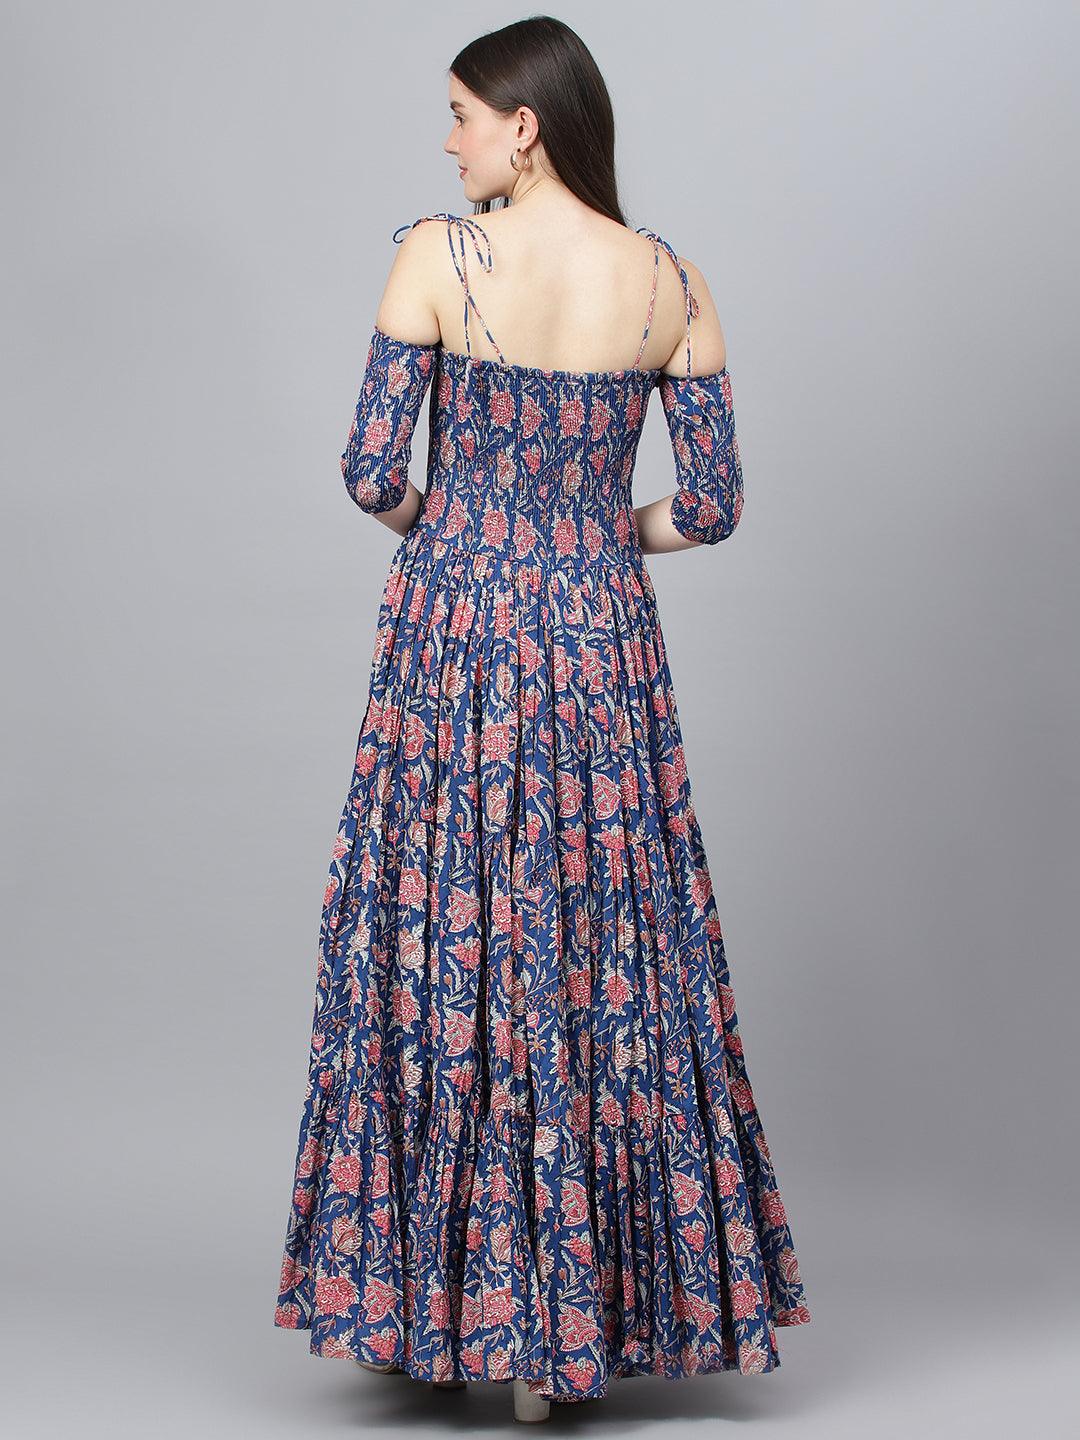 Divena Blue Floral Printed Shoulder Strips Flared Long Dress - divena world